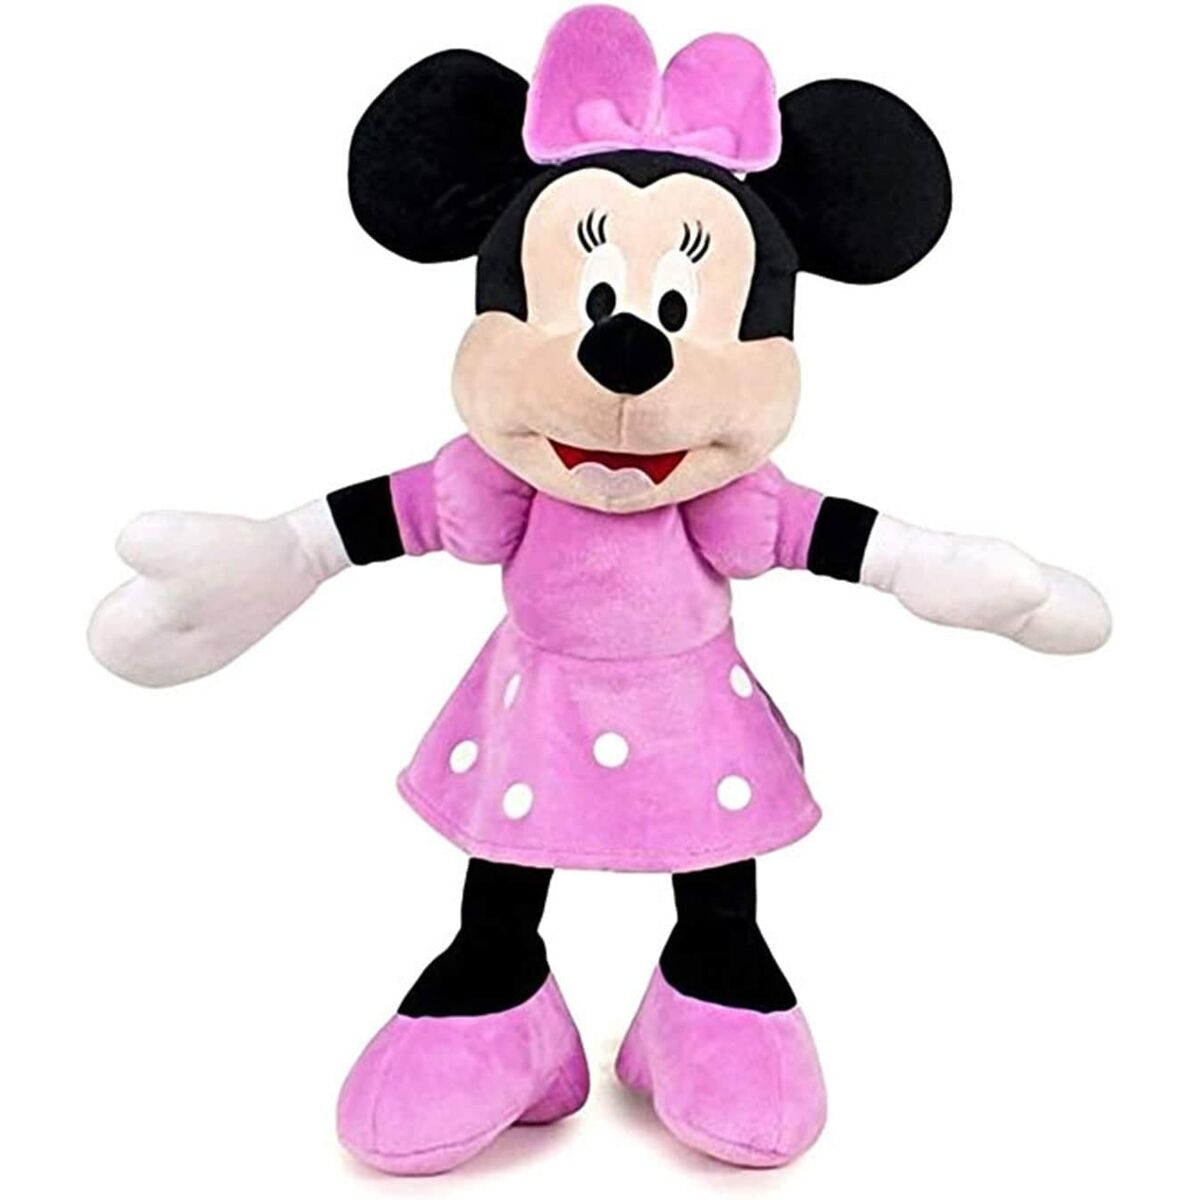 Jouet Peluche Minnie Mouse 38 cm Disney